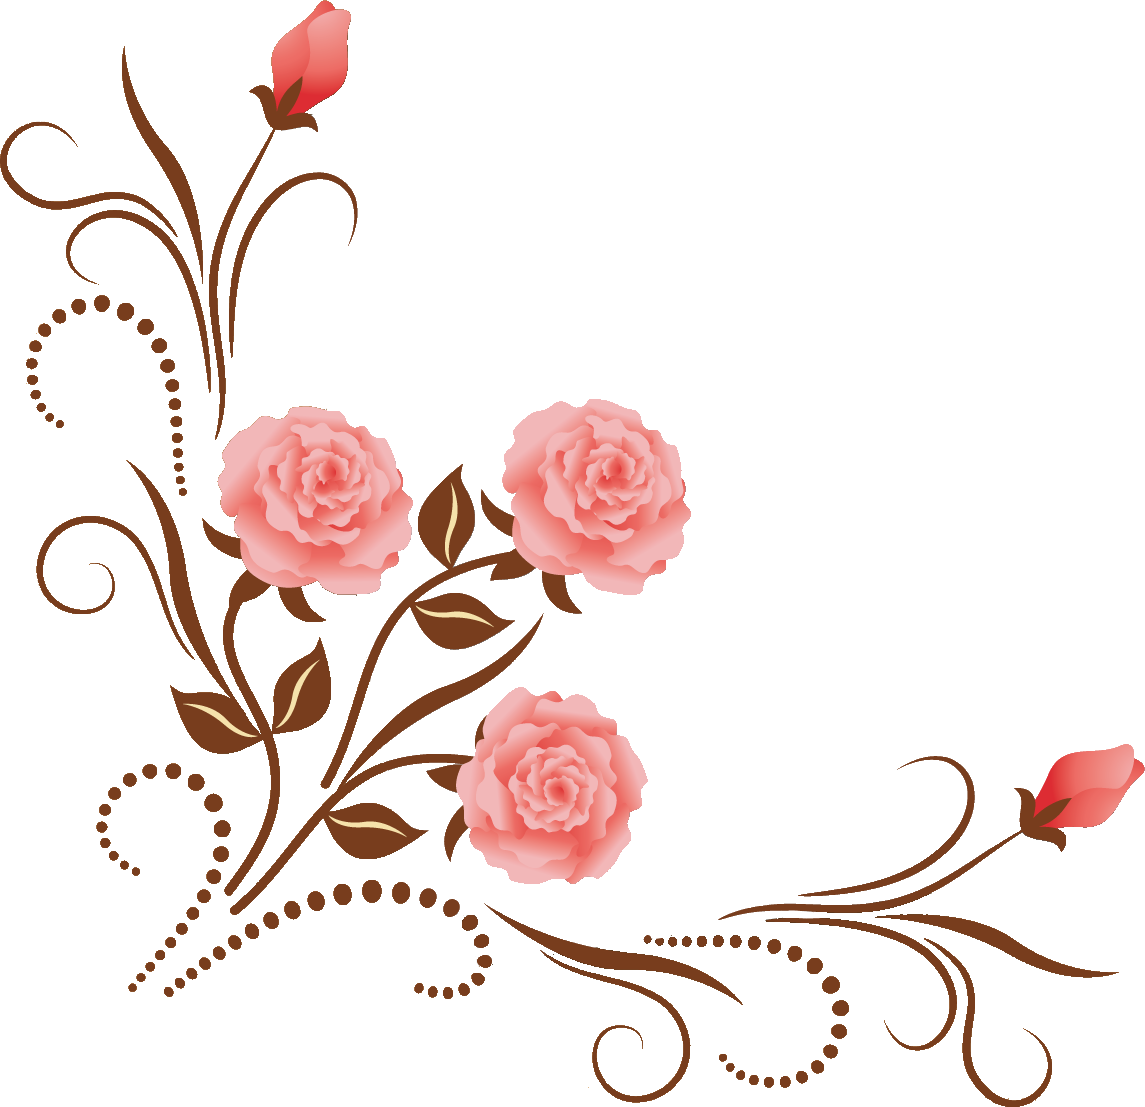 バラの画像 イラスト フリー素材 No 315 ピンクのバラ つぼみ